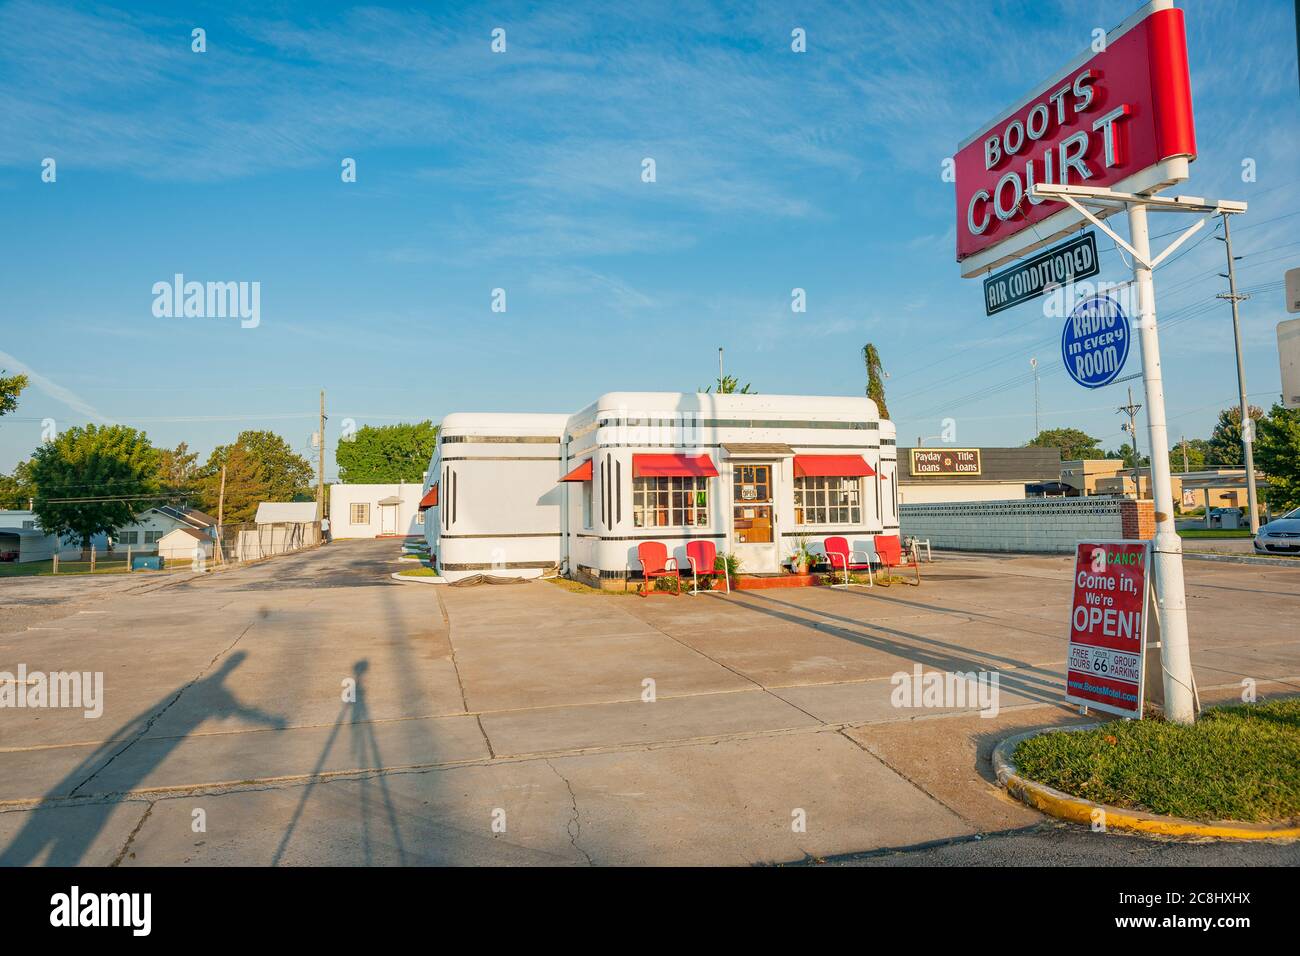 Carthage, États-Unis, septembre 7 2015 ; Boots court Motel, fidèlement restauré style déco historique US route 66 Motor Hotel à Carthage, Missouri, a ouvert ses portes Banque D'Images